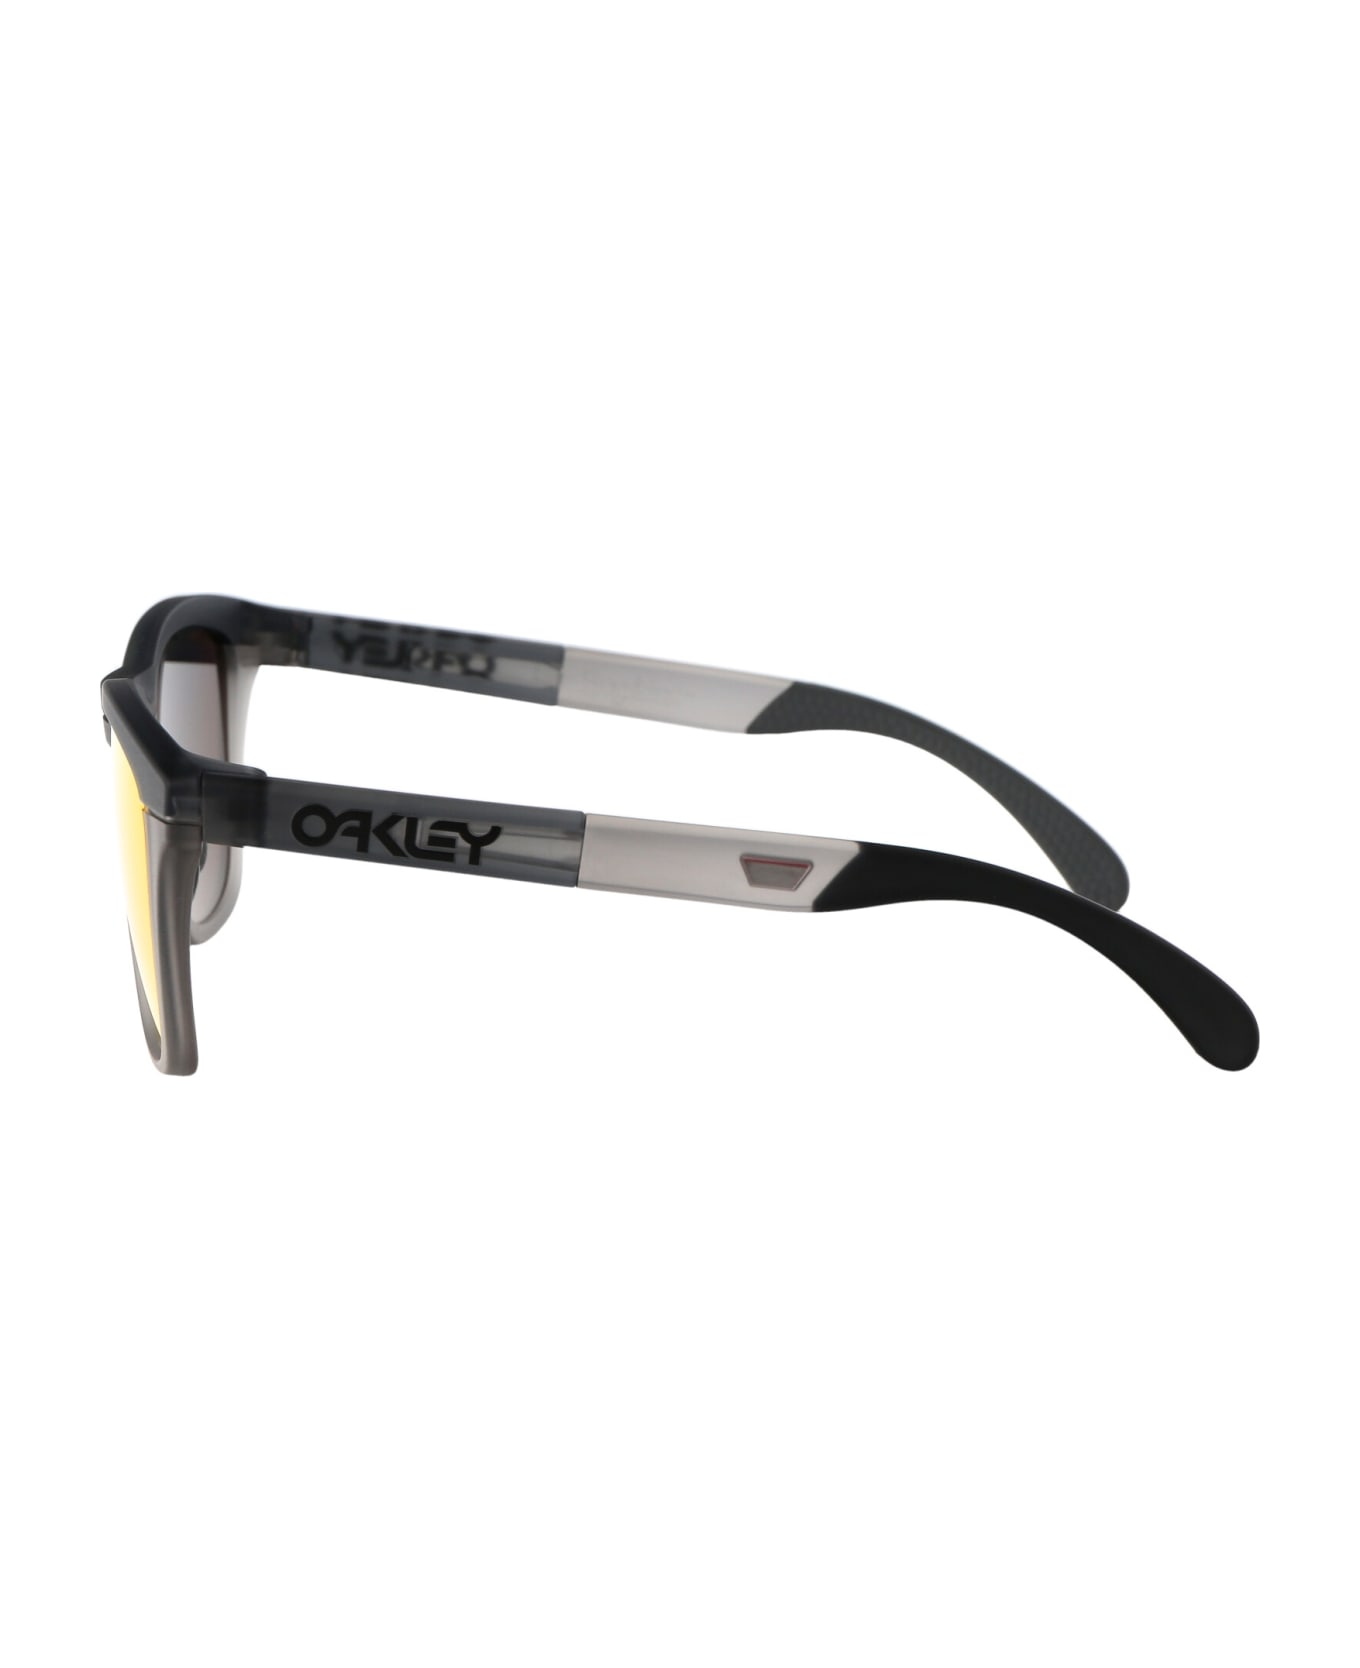 Oakley Frogskins Range Sunglasses - 928401 Matte Grey Smoke/Grey Ink